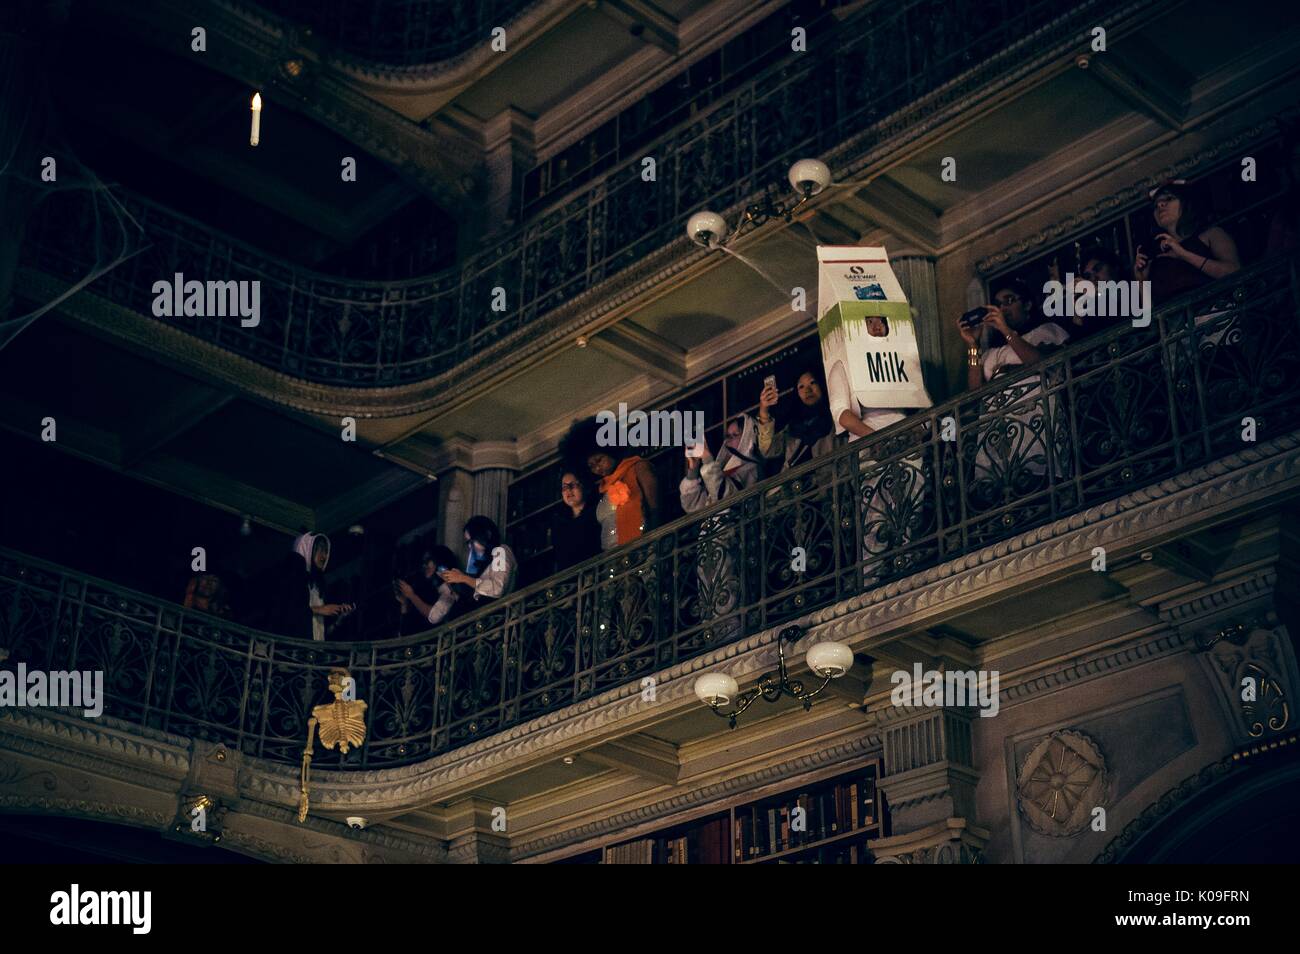 Vista de uno de los pisos superiores de la biblioteca Peabody, estudiantes universitarios están de pie mirando hacia abajo y un estudiante está vestida como una gran caja de cartón de leche, 2015. Cortesía de Eric Chen. Foto de stock